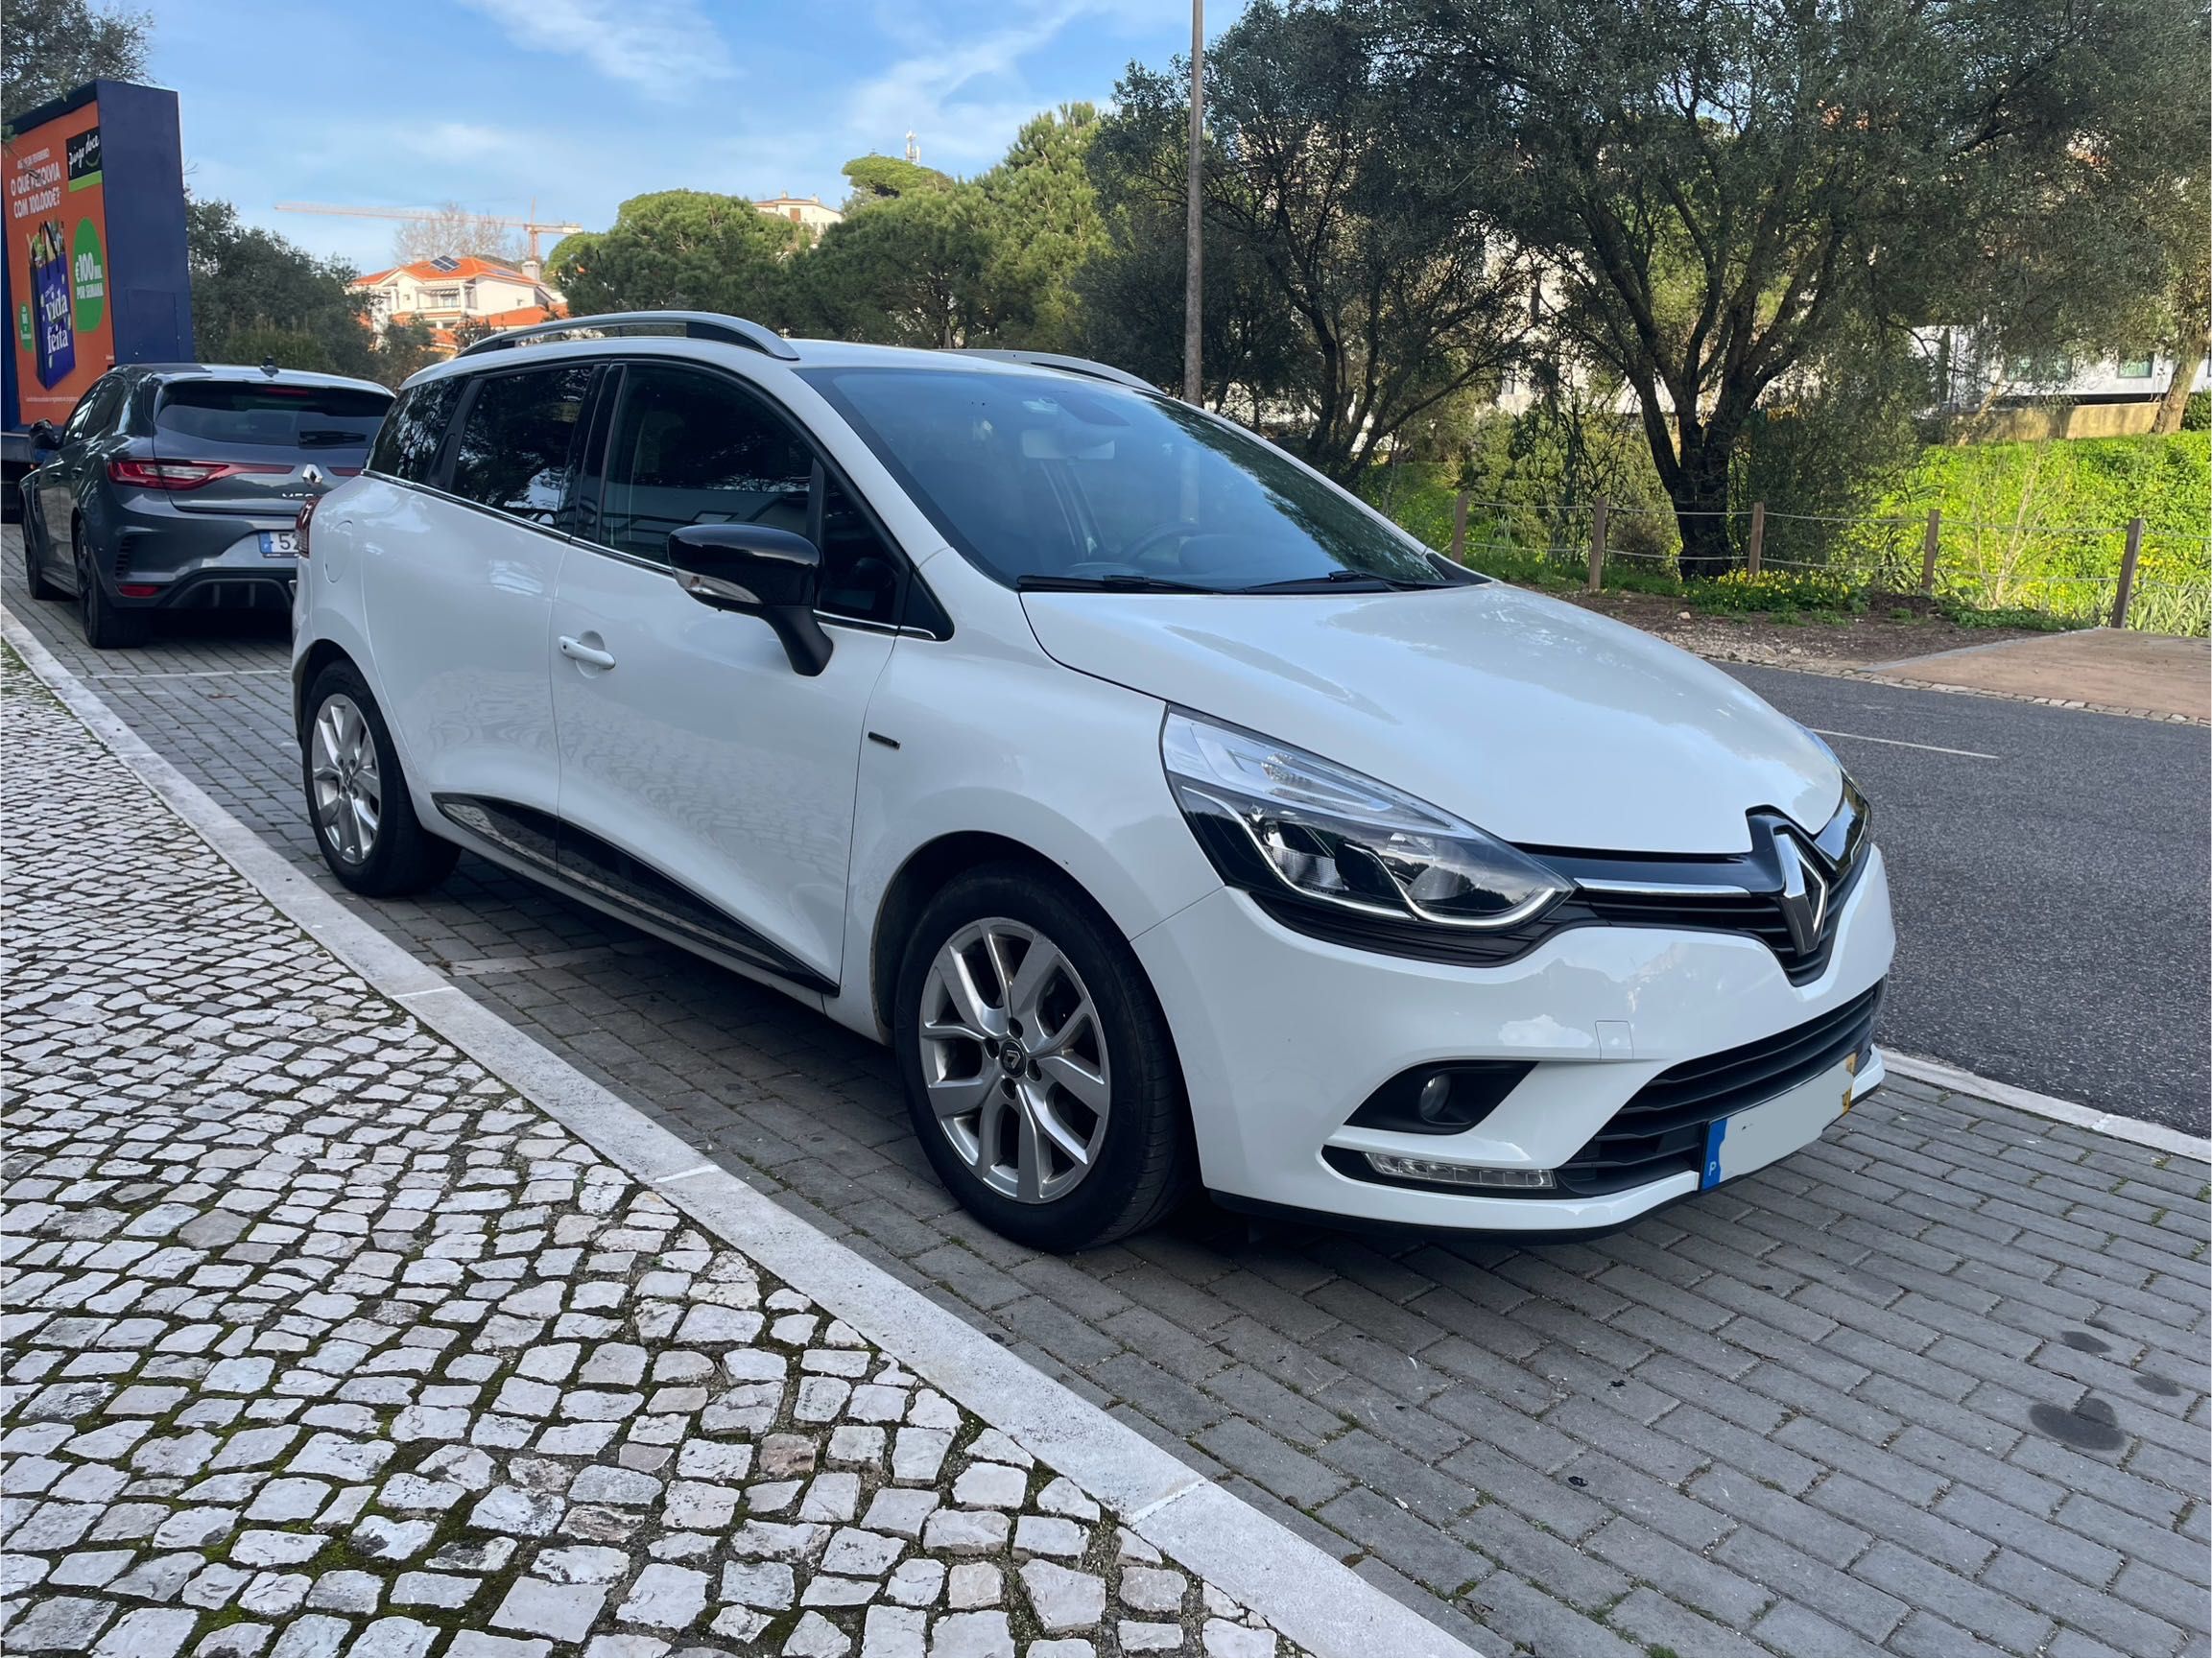 Renault Clio Sport Tourer 1.5 dCi 2019 imaculada